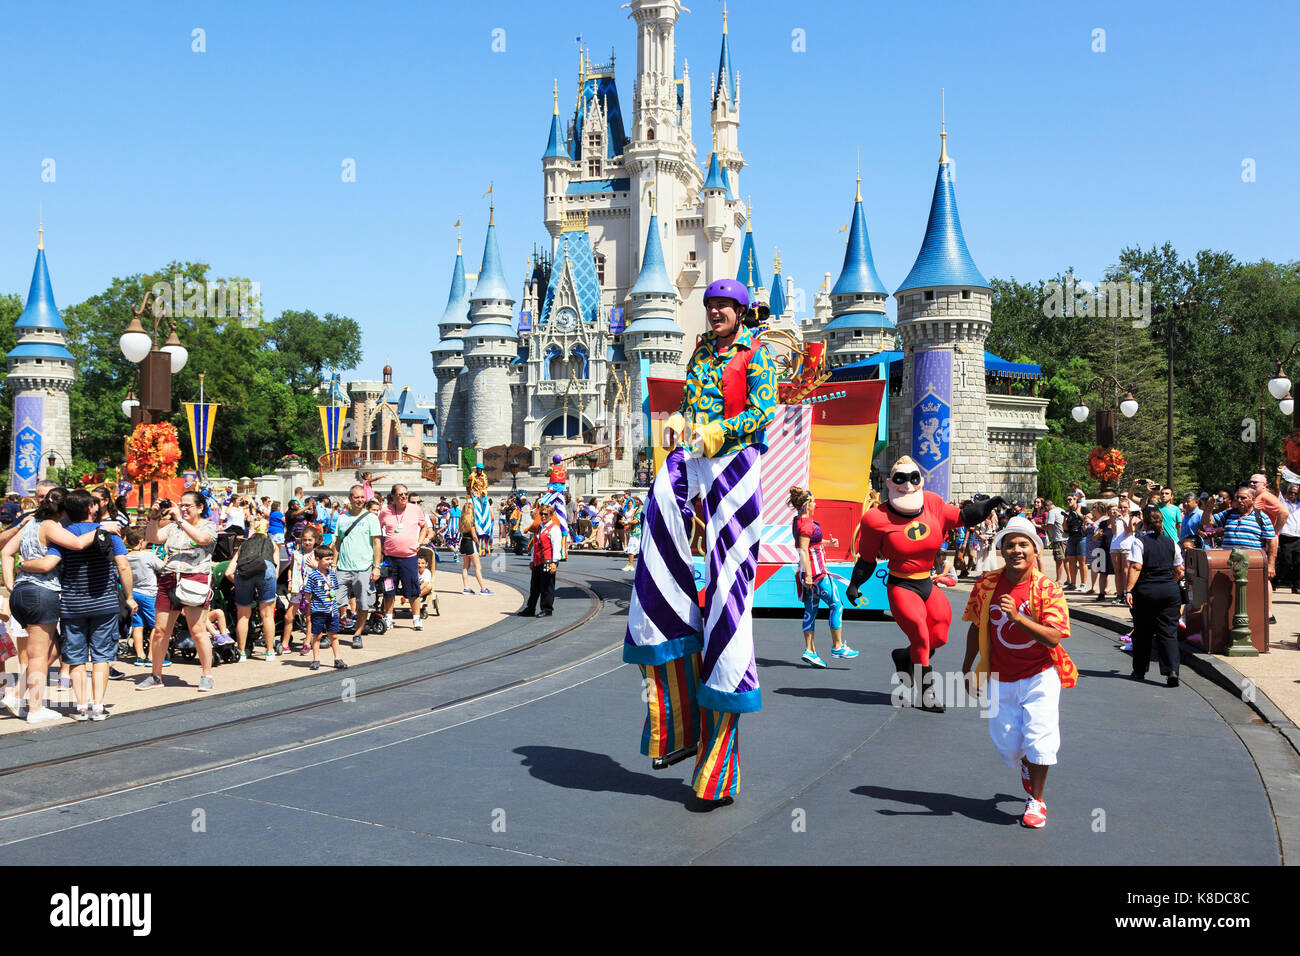 Street entertainment at Walt Disney's Magic Kingdom theme park, Orlando, Florida, USA Stock Photo